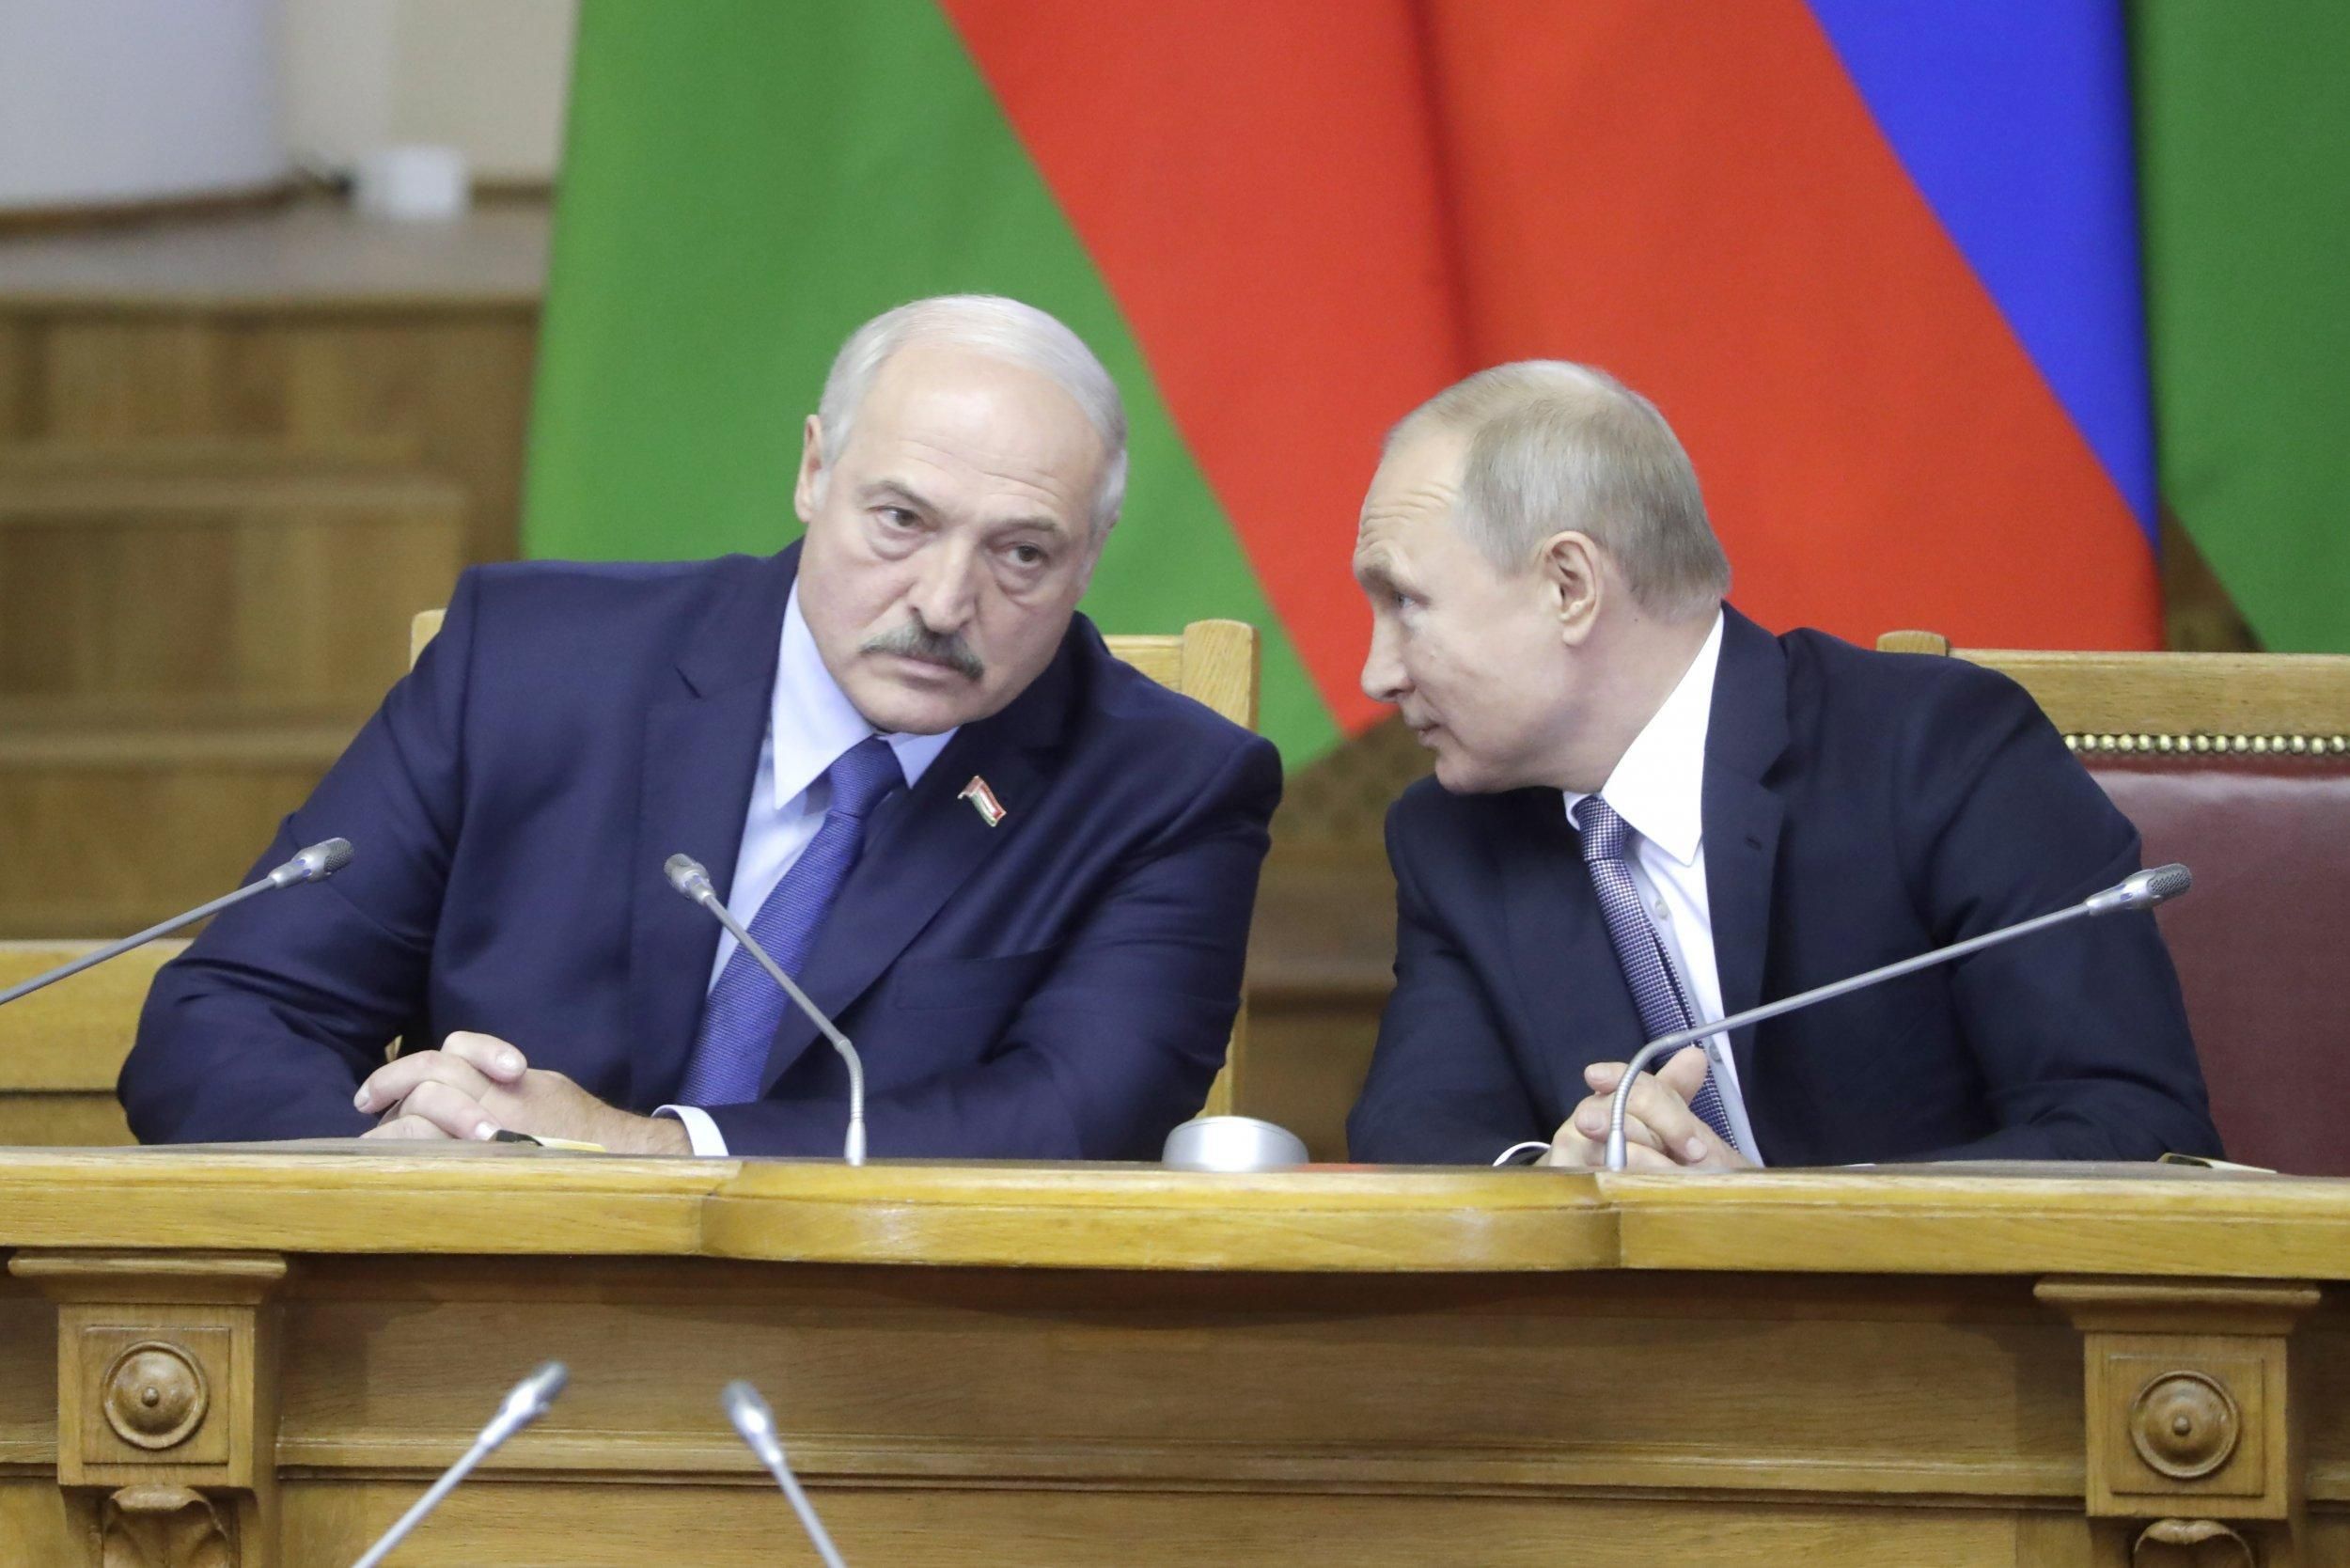 Разговор будет неприятным, – журналист о встрече Путина и Лукашенко